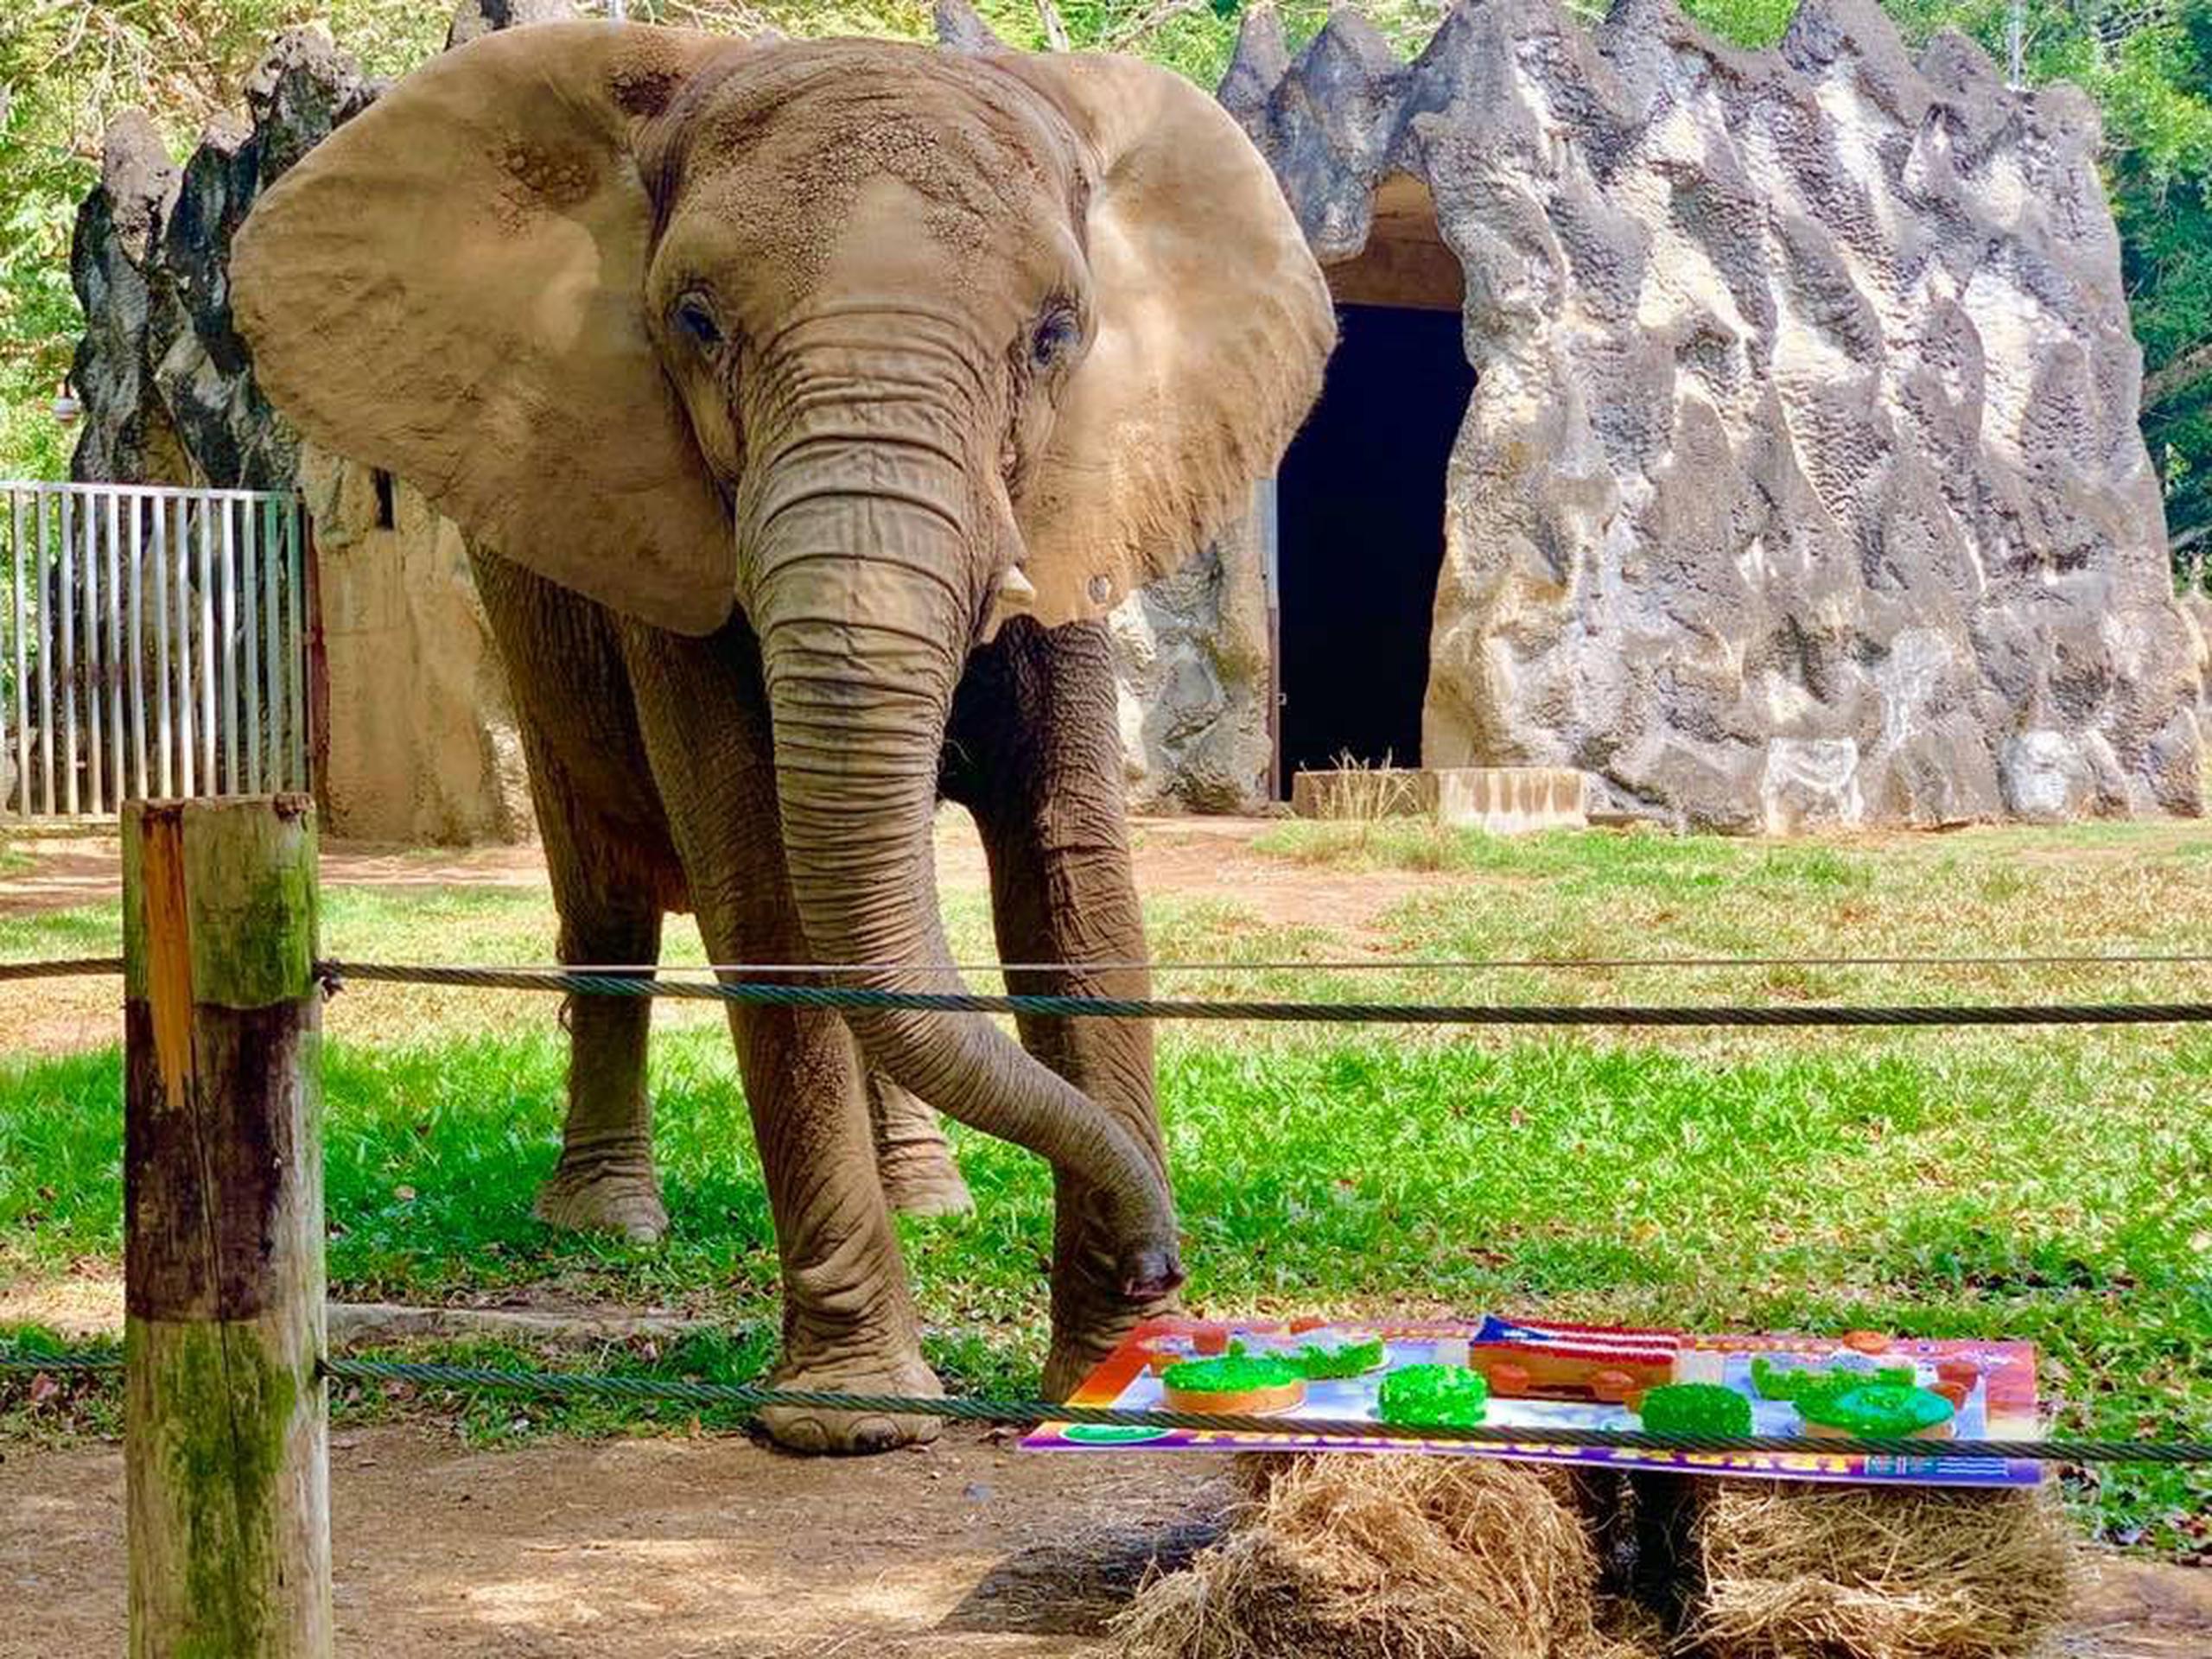 La Fundación Salvemos el Zoológico Juan A. Rivero lamentó que este año no se les permitiera llevar un bizcocho a la elefanta para festejarla.